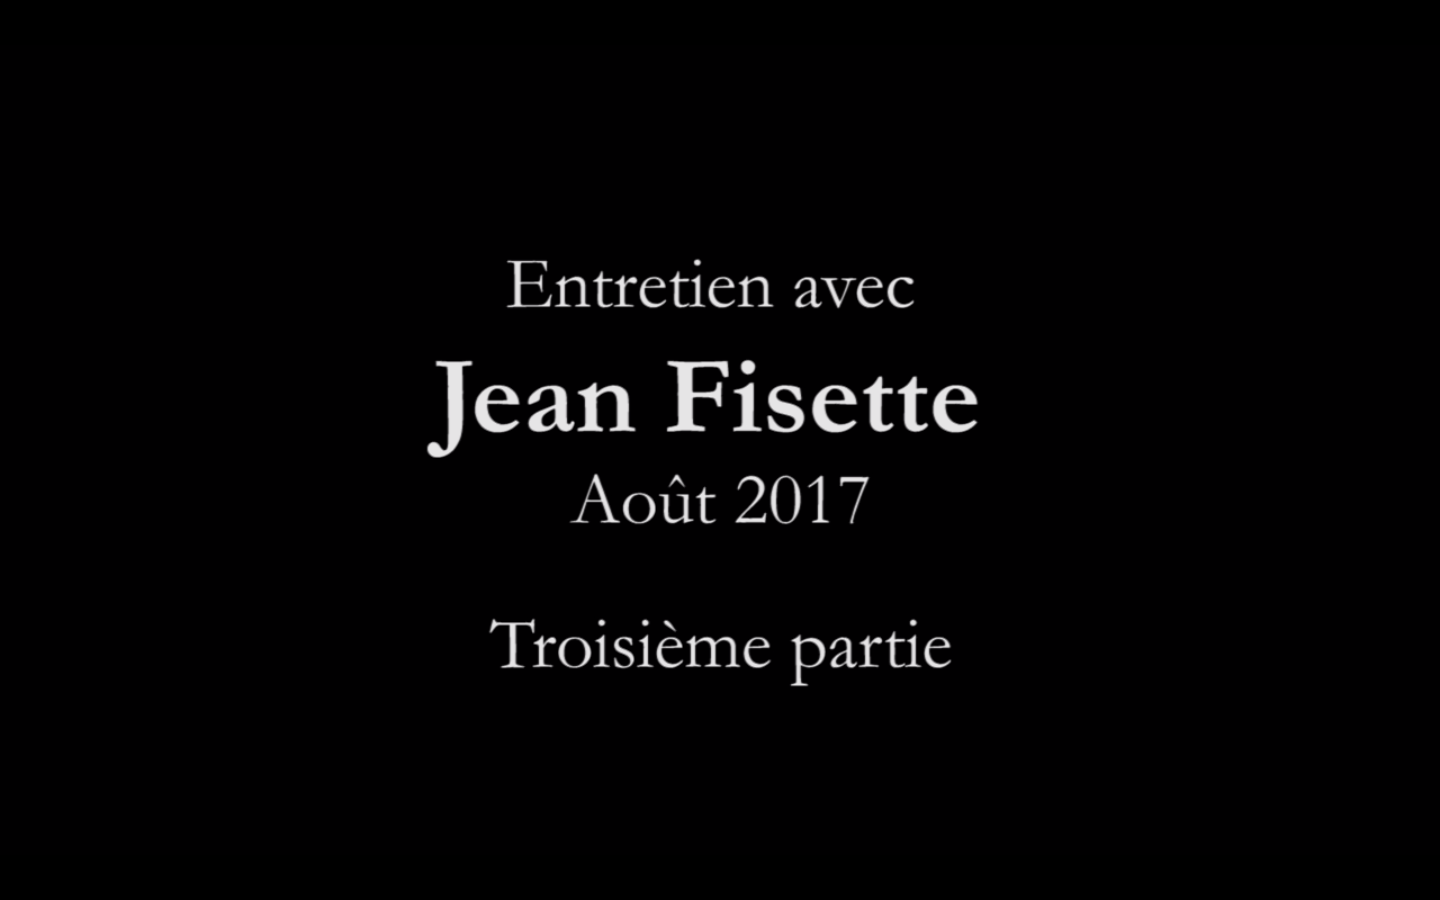 Entretien avec Jean Fisette (troisième partie)